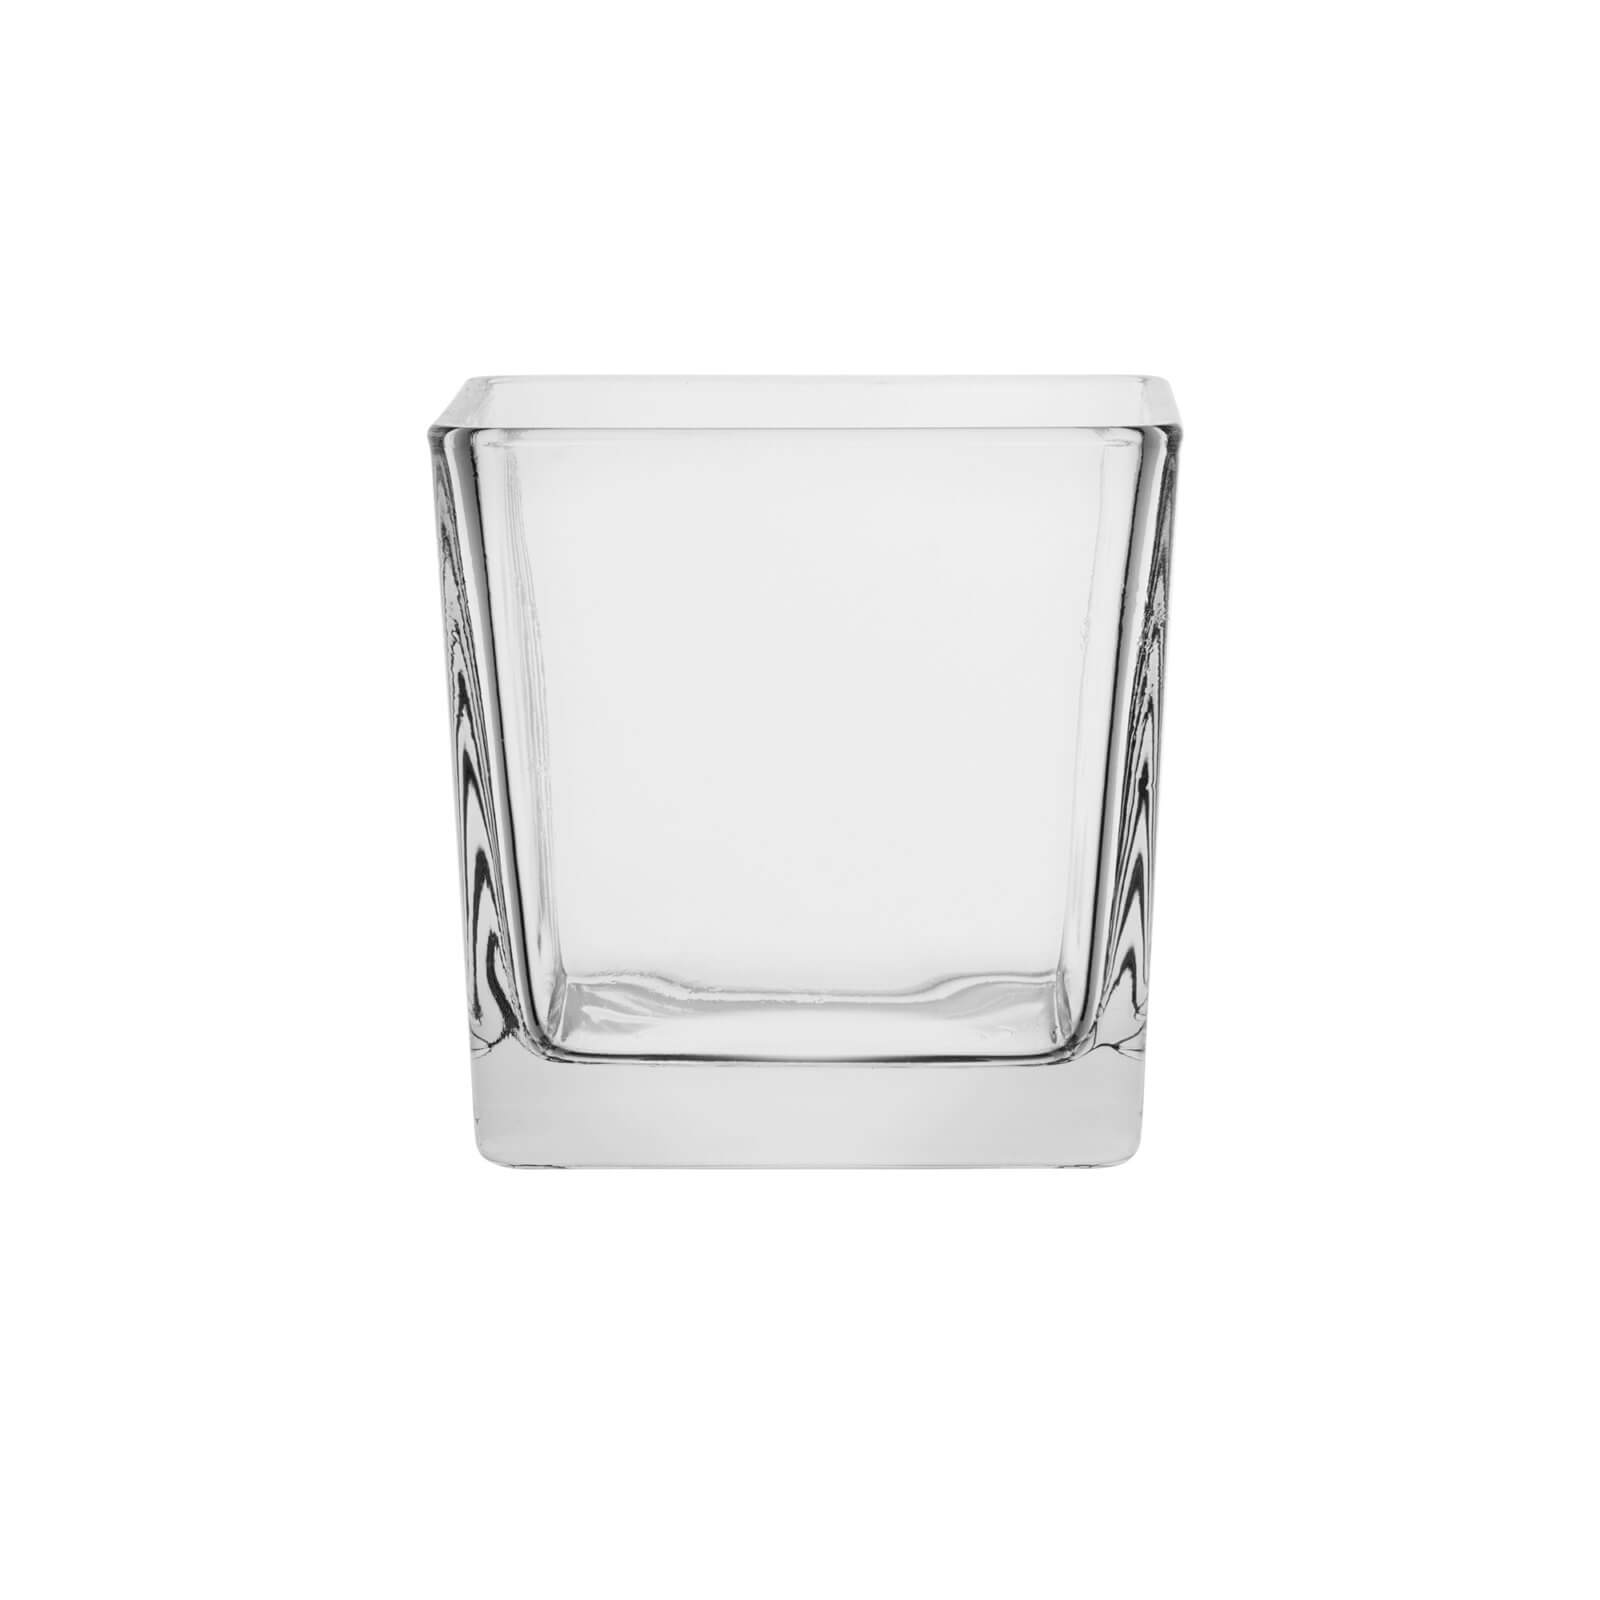 Kwadrat świecznik szklany 10x10 cm 70220 kpl. 6 szt.